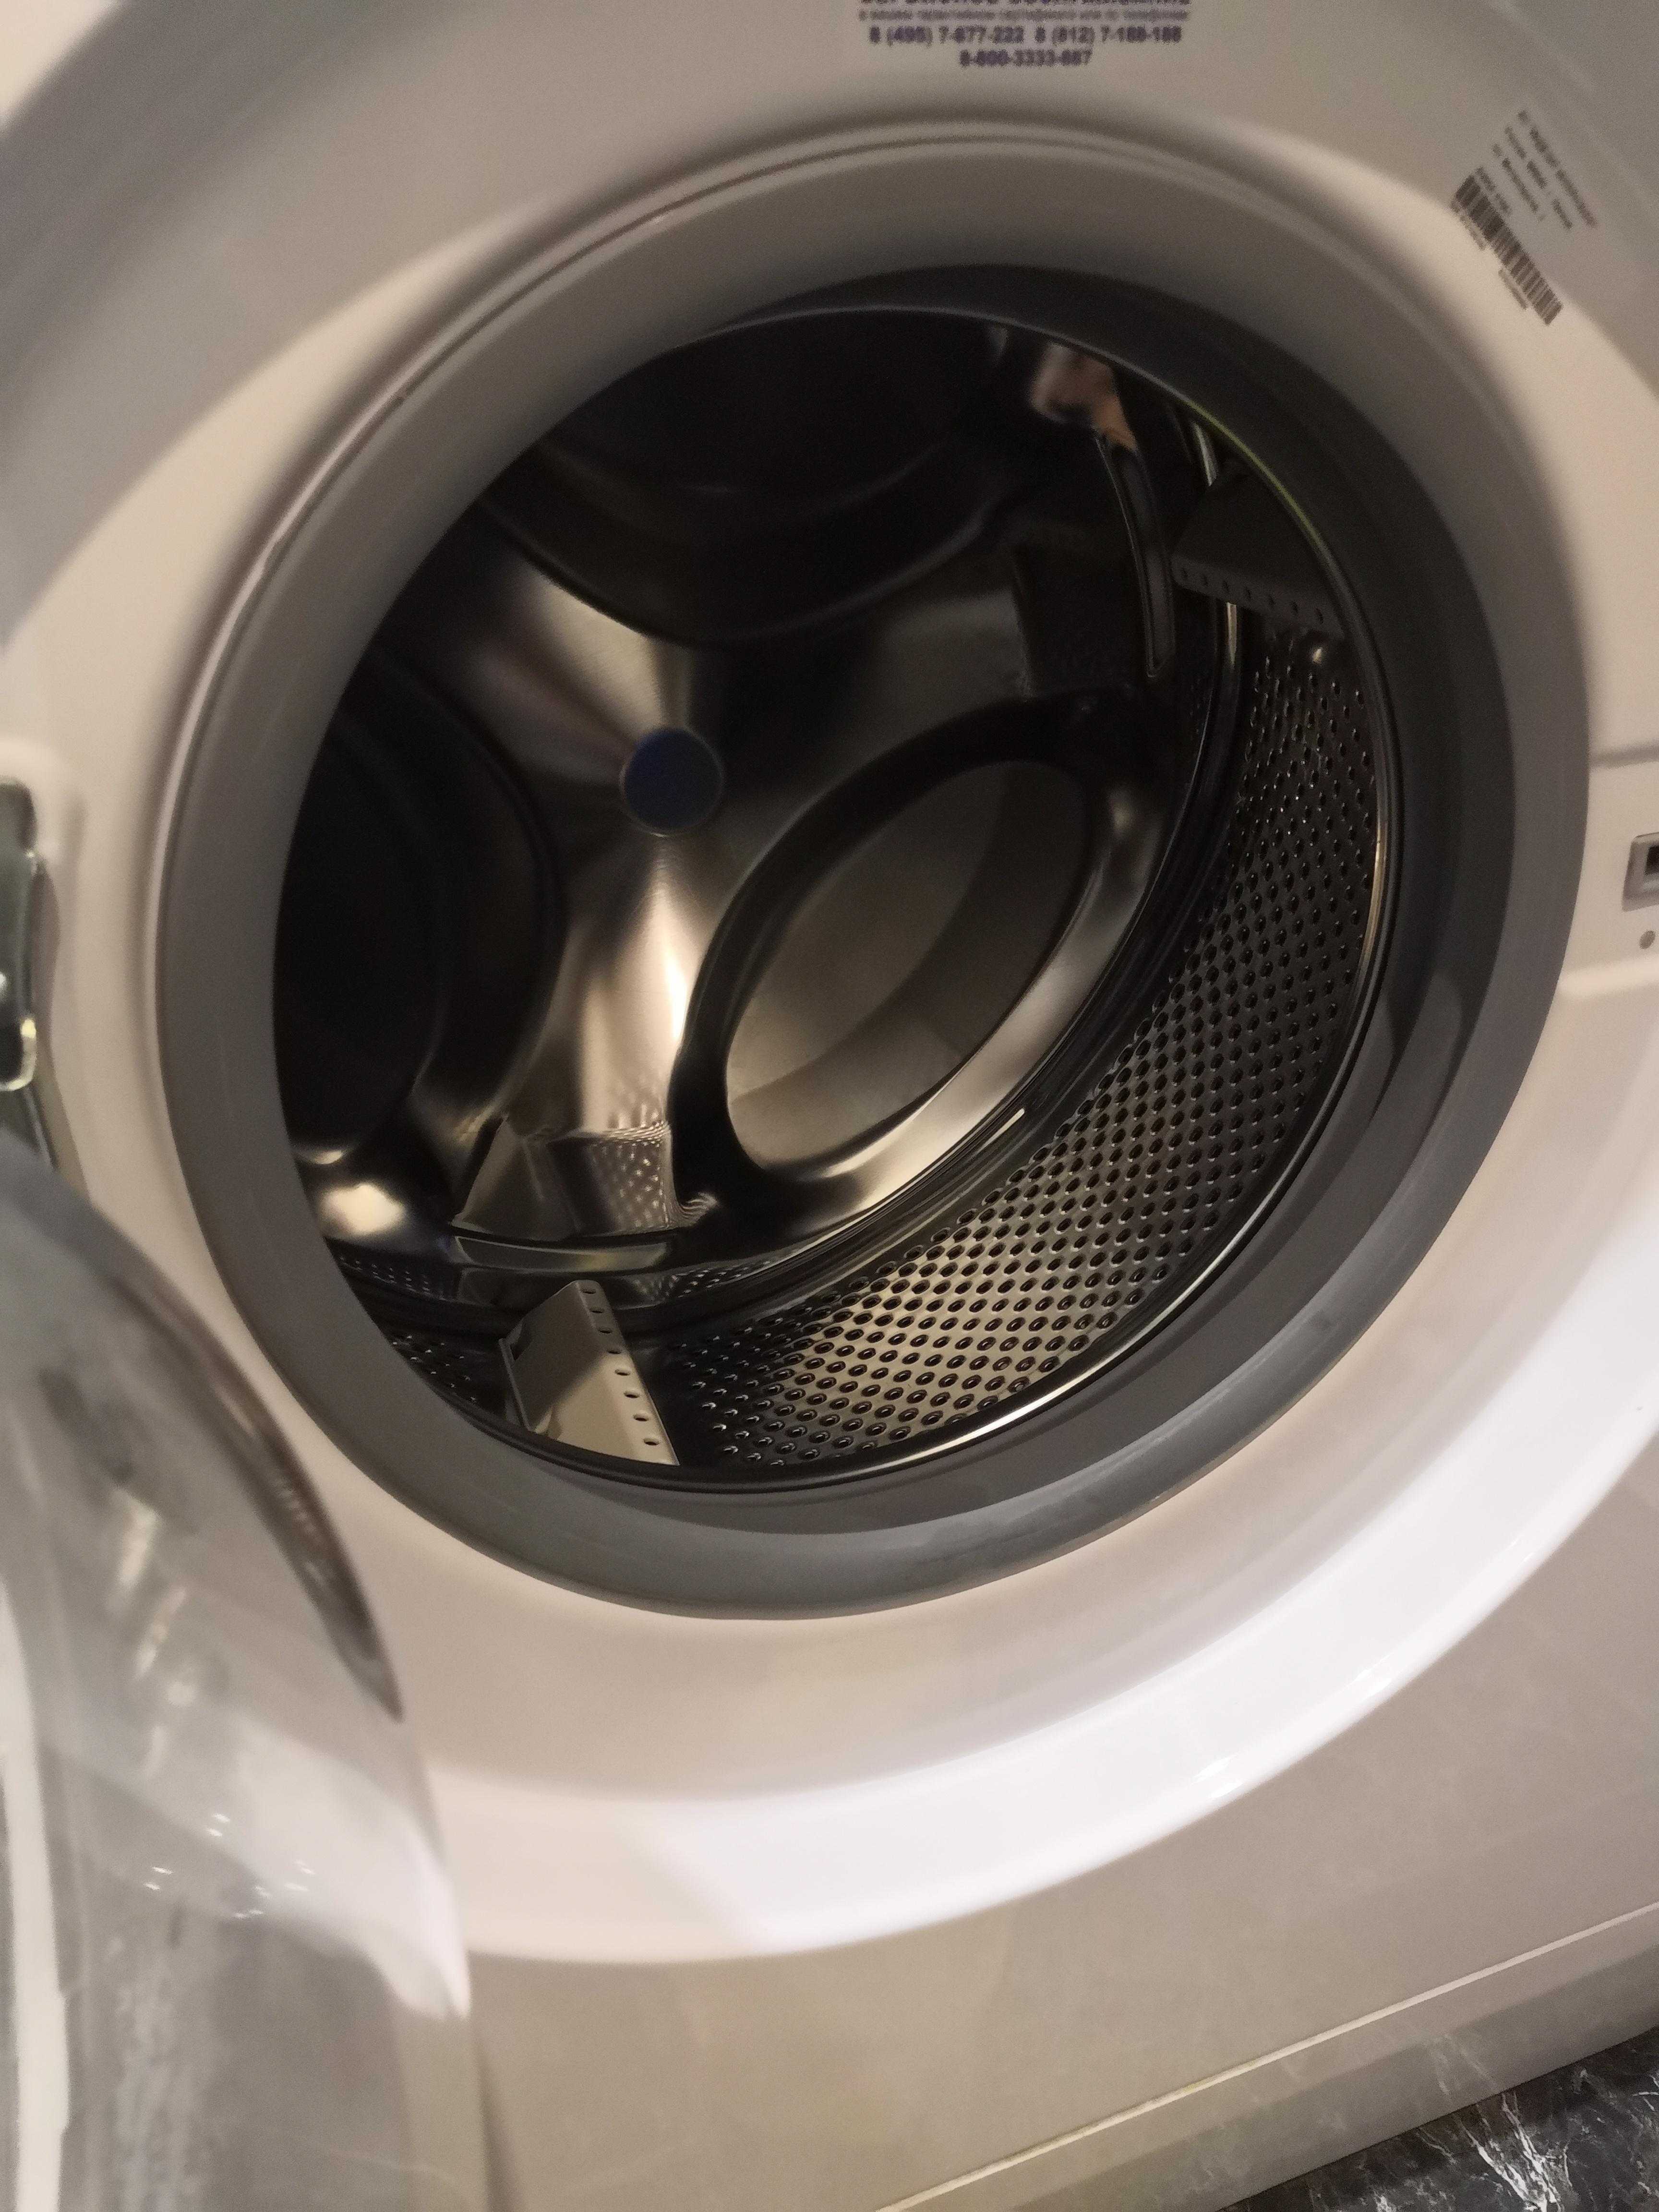 Топ-10 лучших стиральных машин indesit: рейтинг 2021 года и обзор характеристик моделей, а также отзывы владельцев